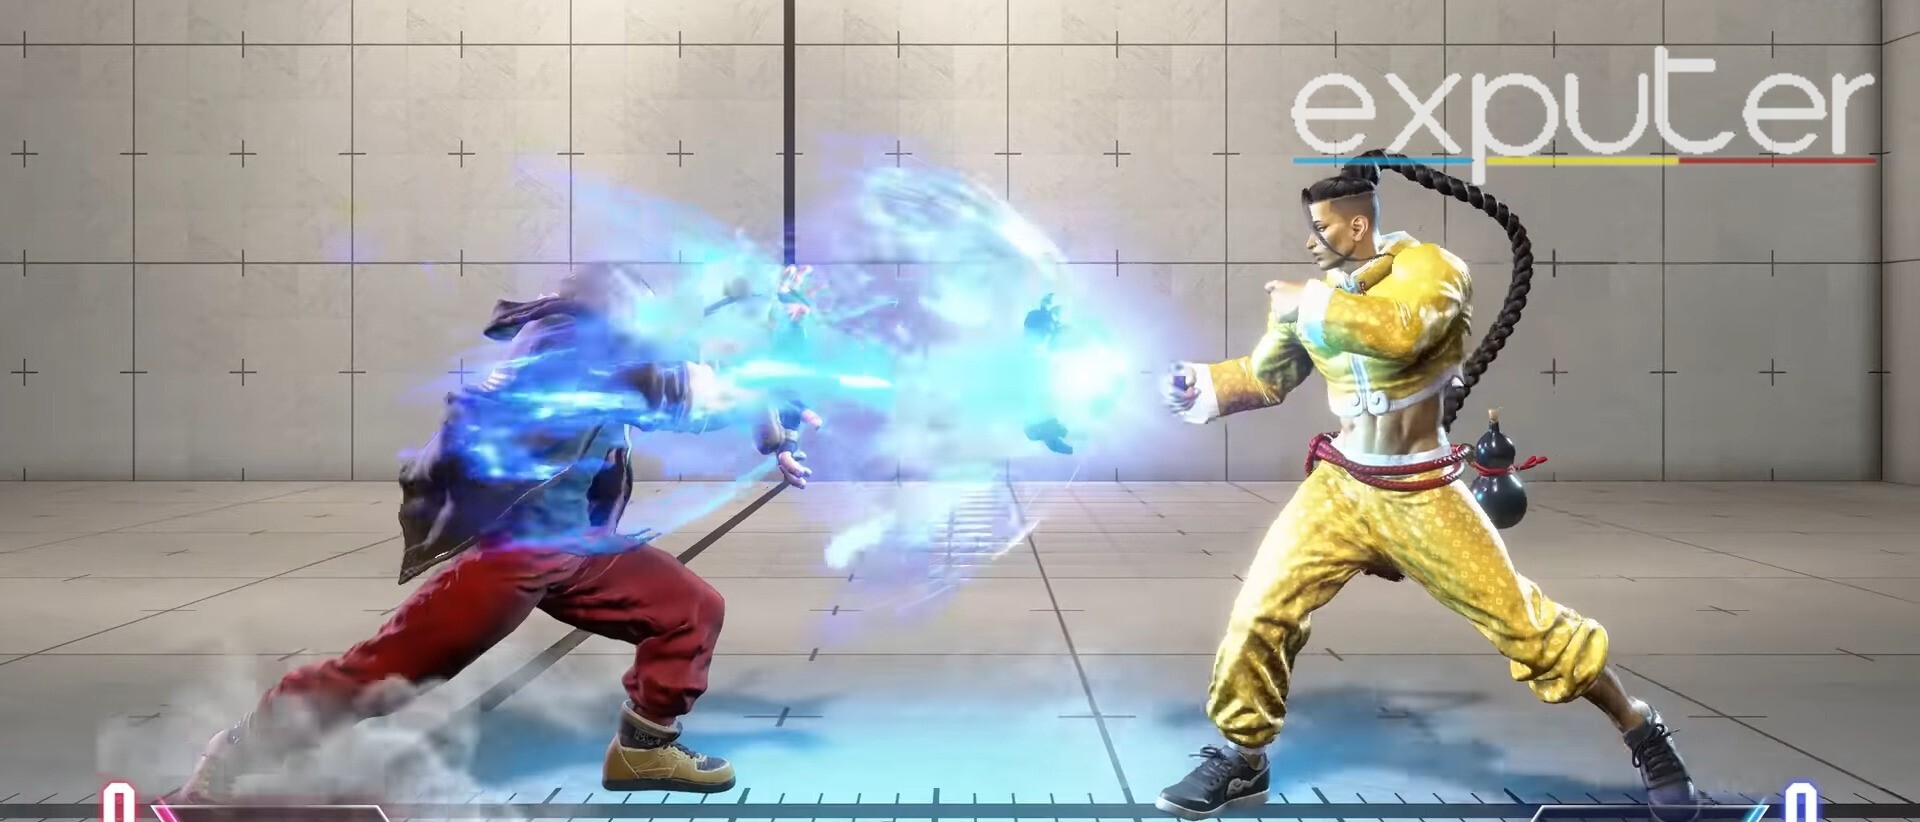 Ken in Street Fighter 6 